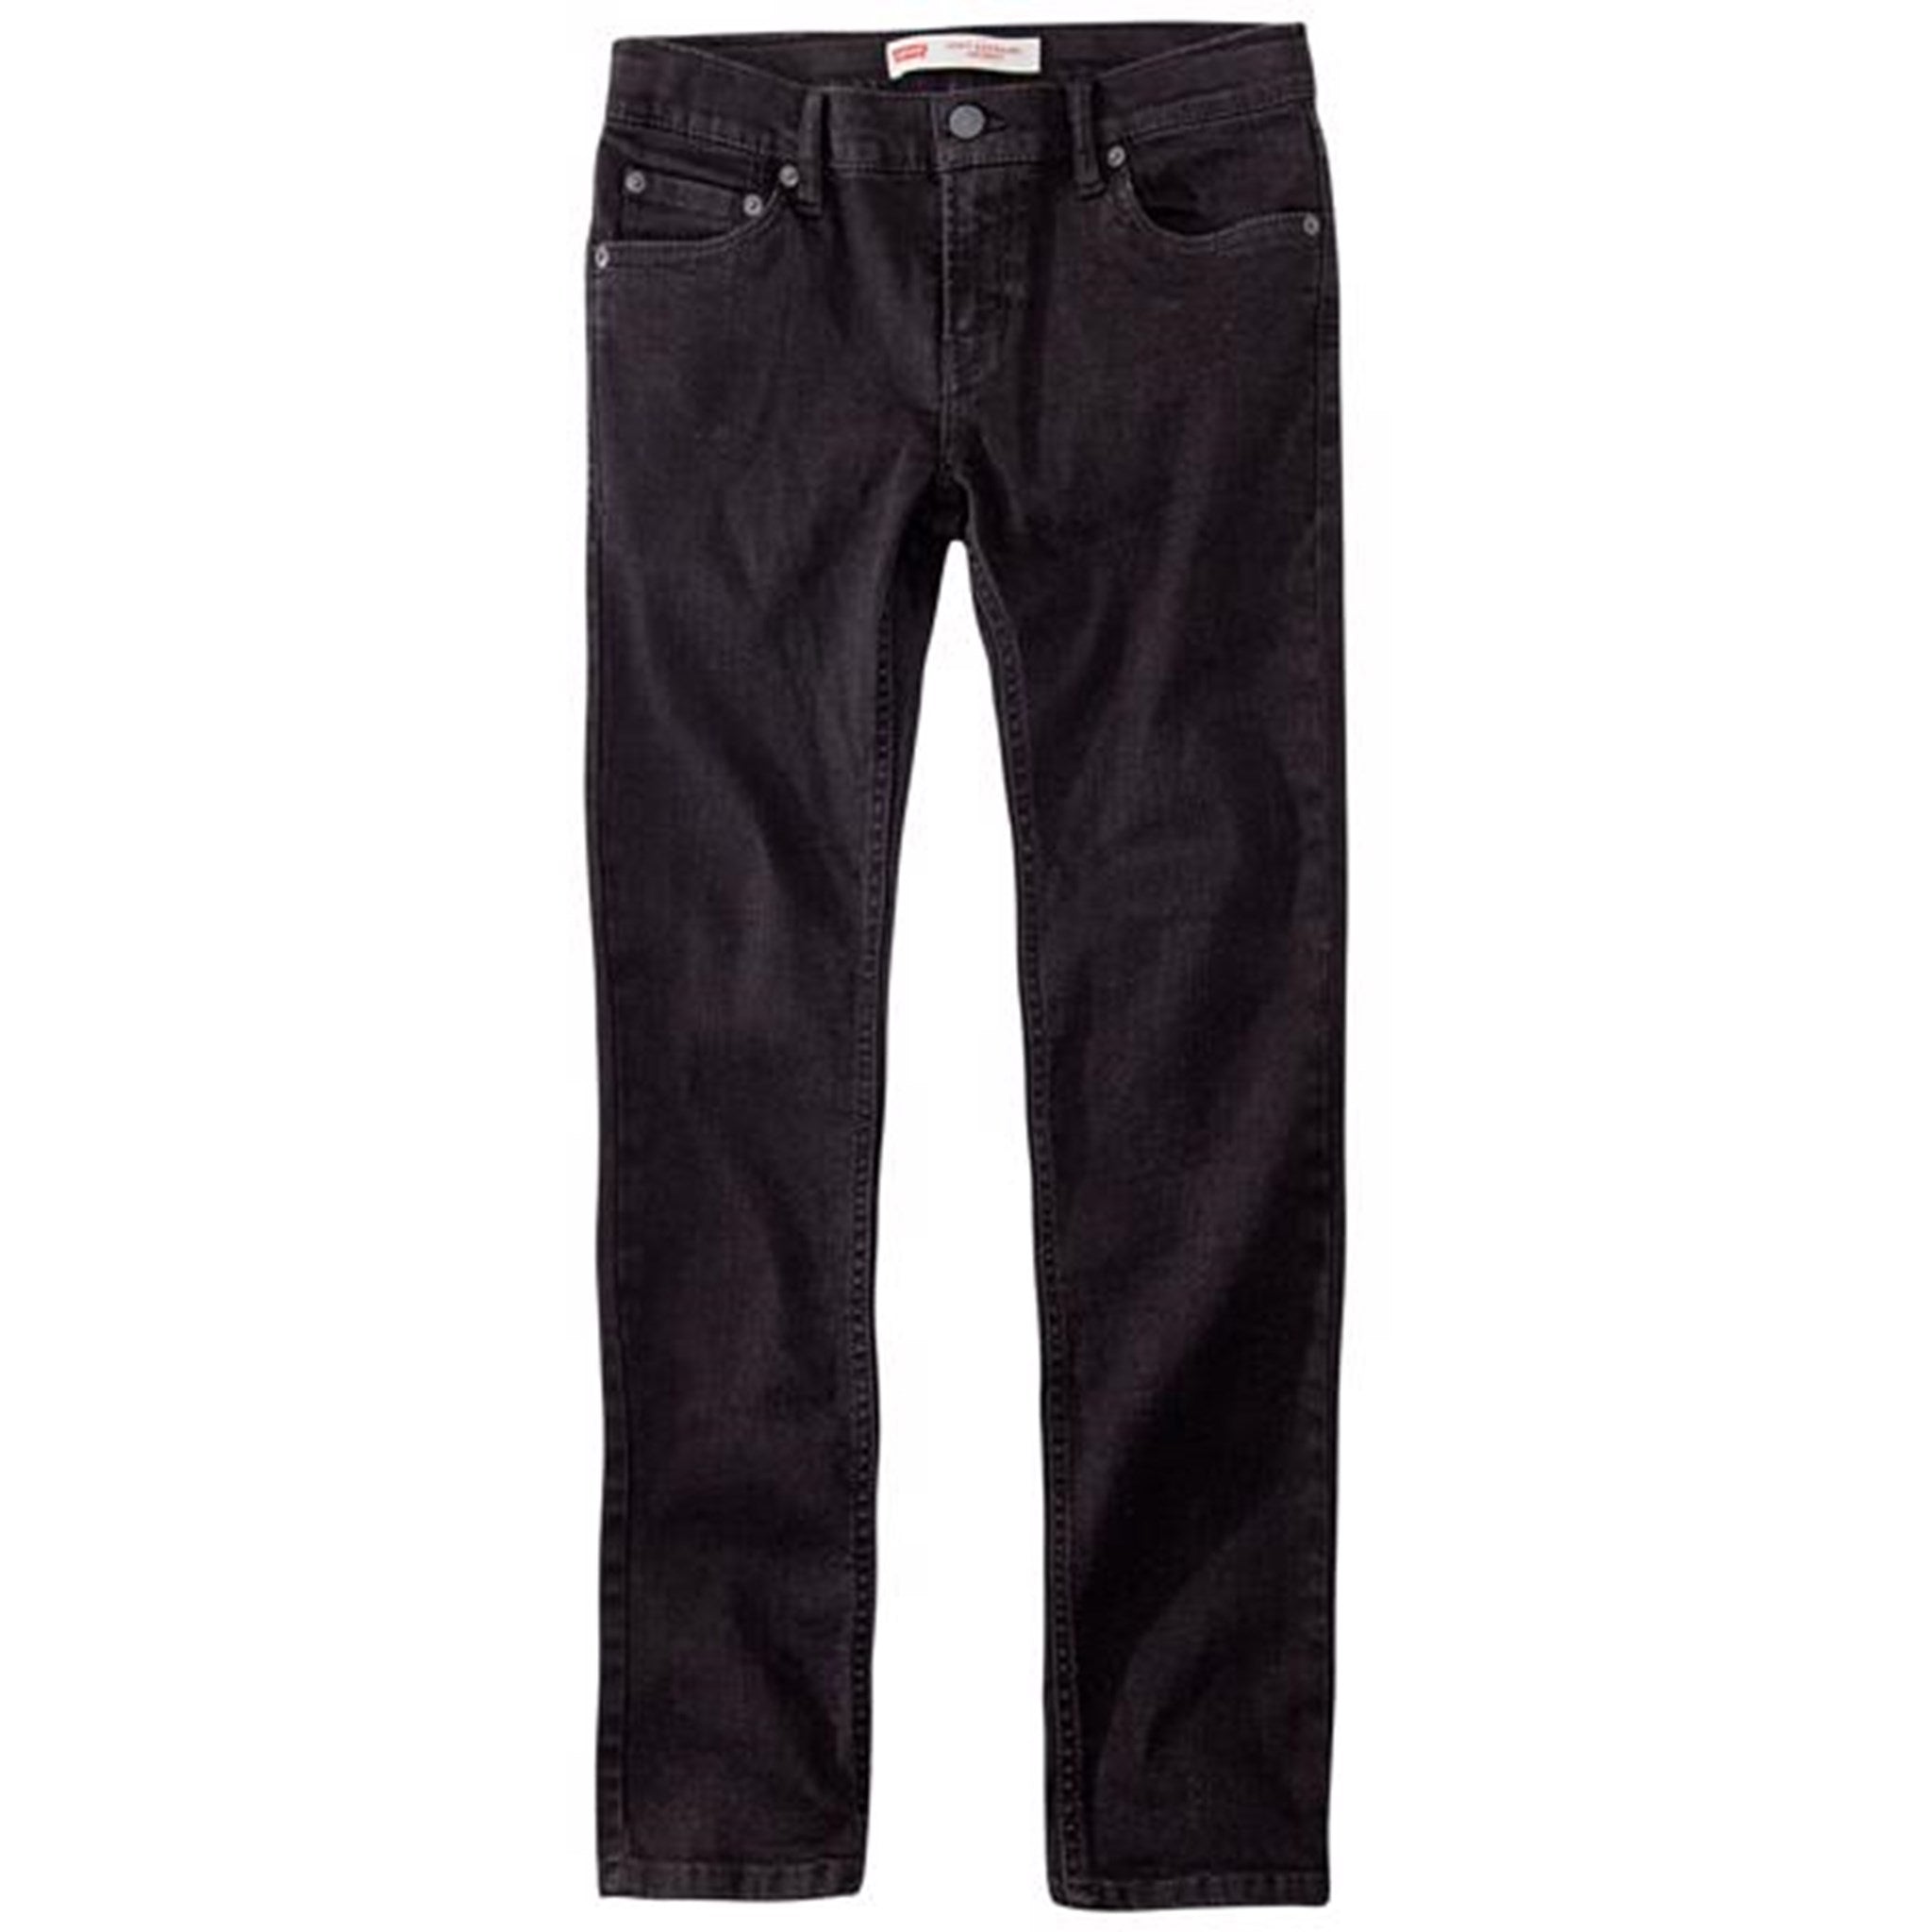 Levi's 519 Jeans Super Skinny Fit Forever Black 3